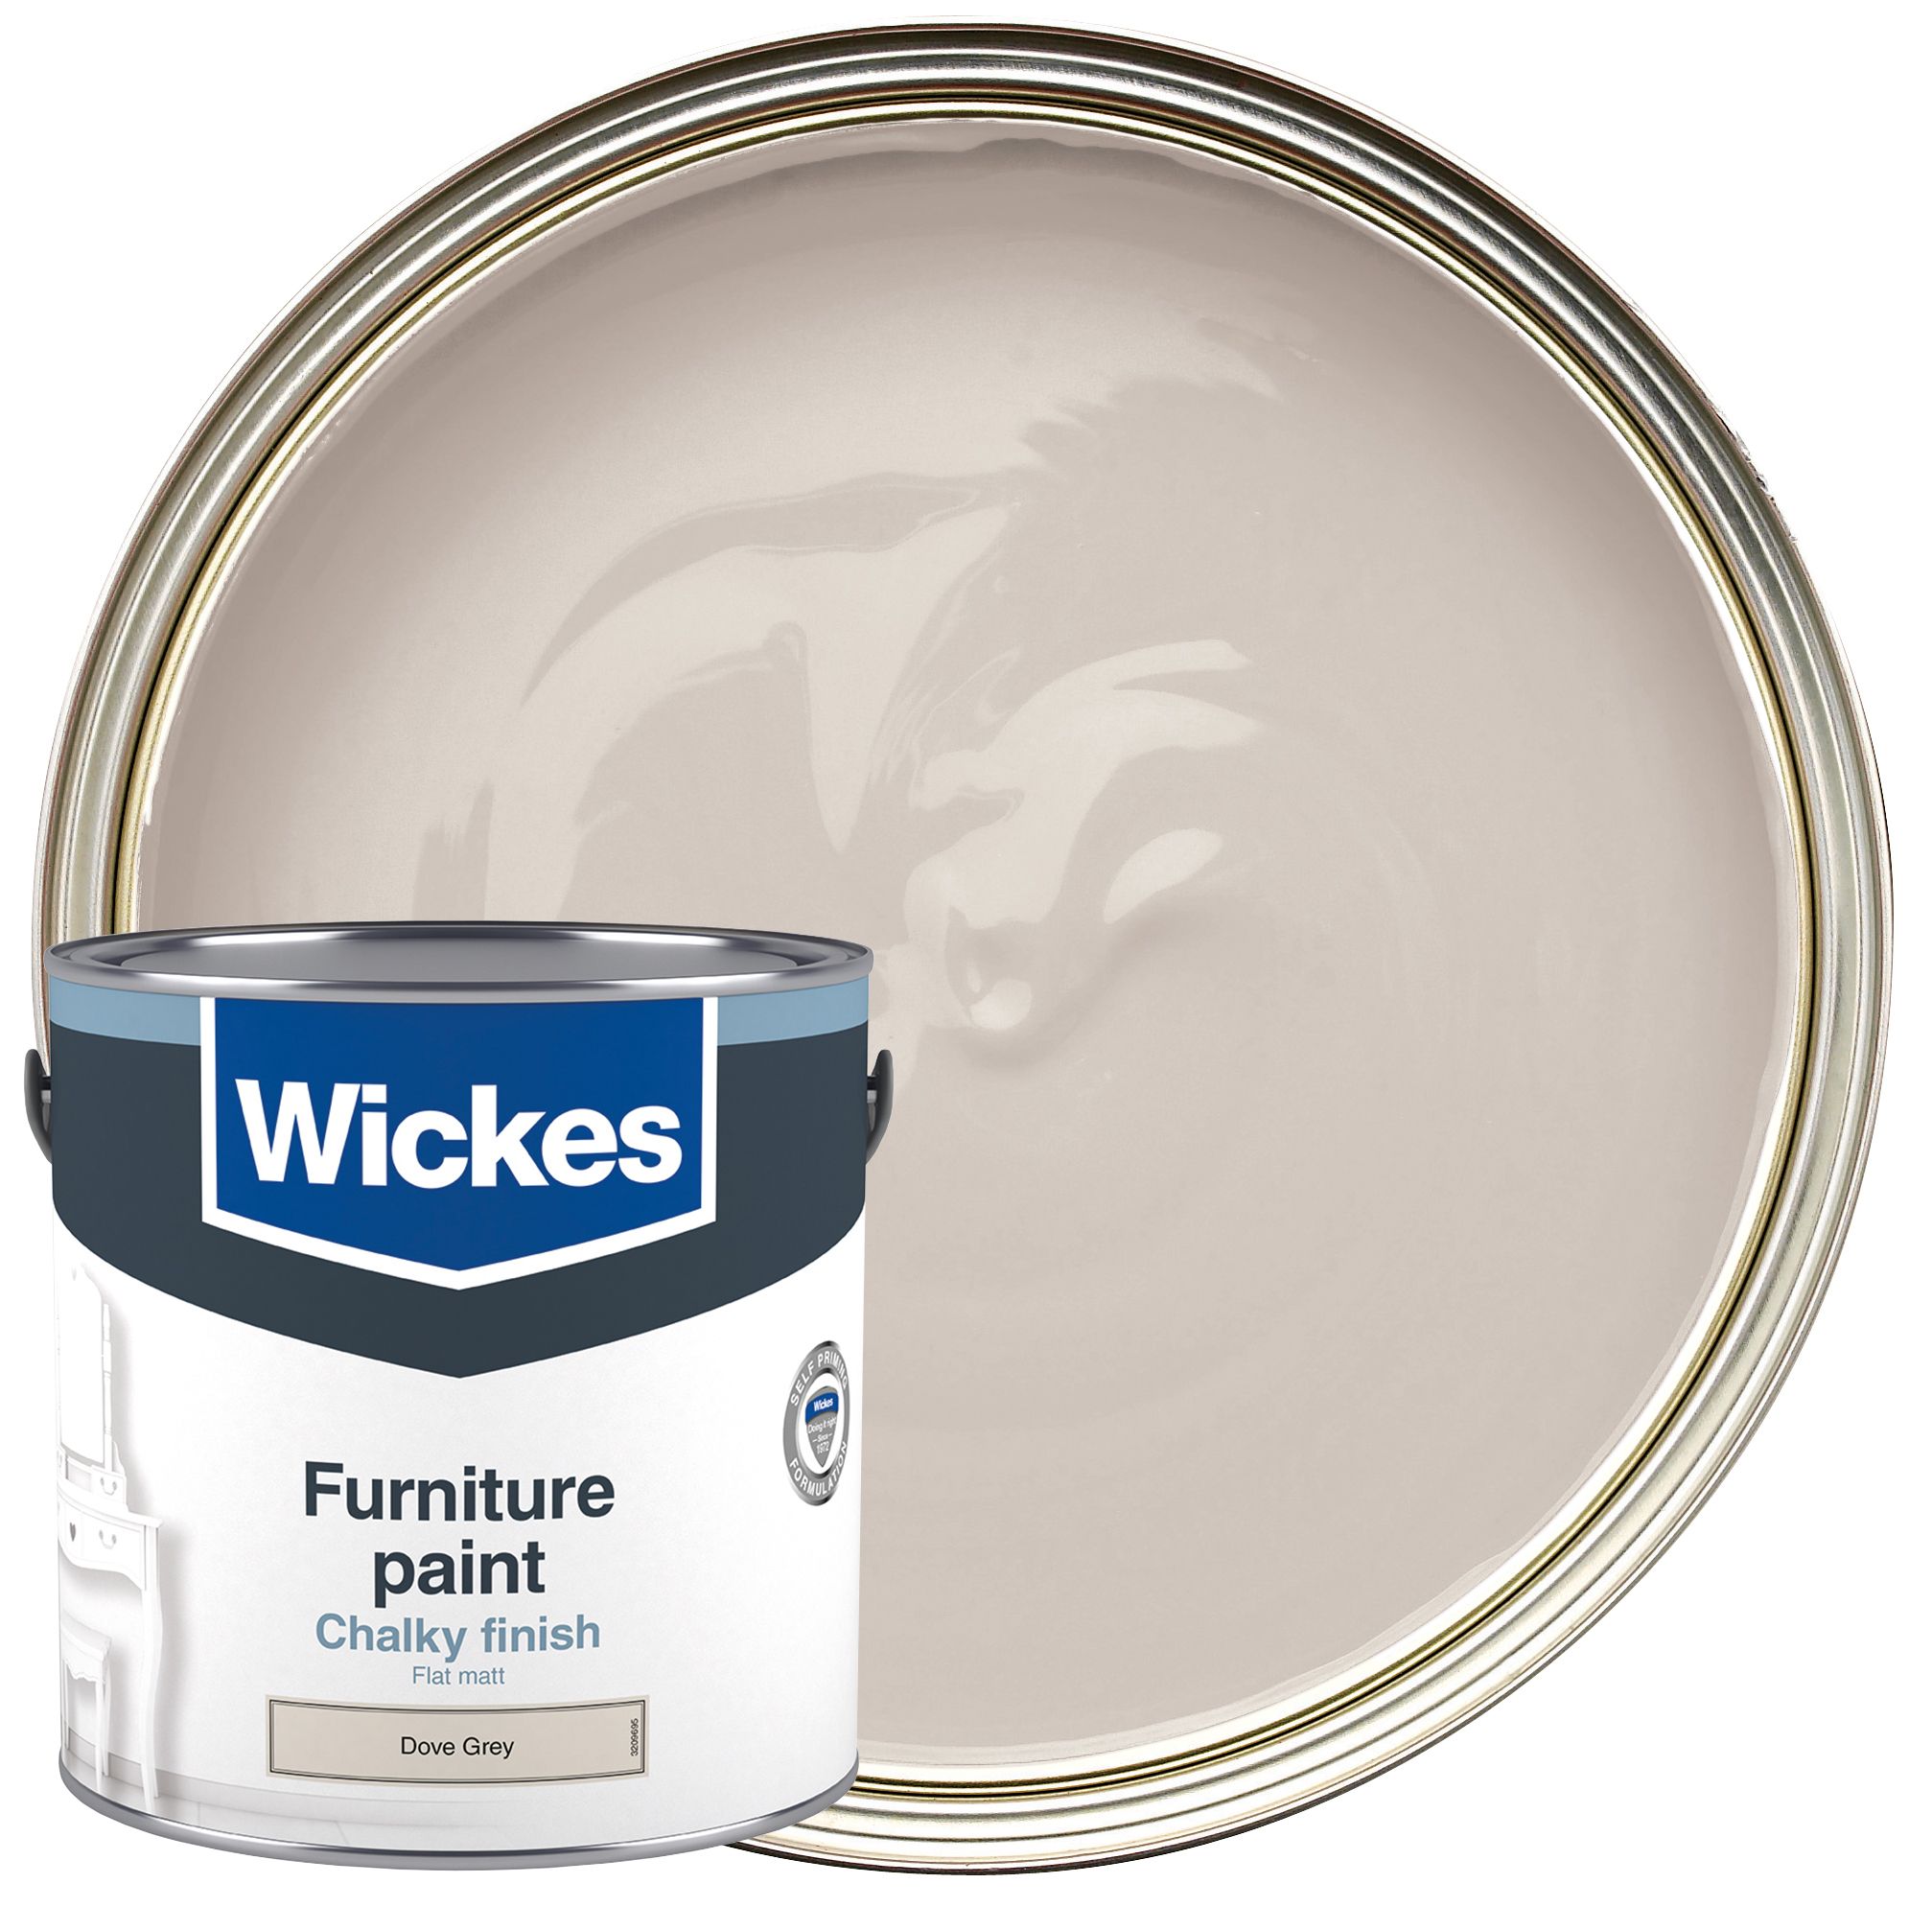 Wickes Flat Matt Furniture Paint - Dove Grey - 2.5L